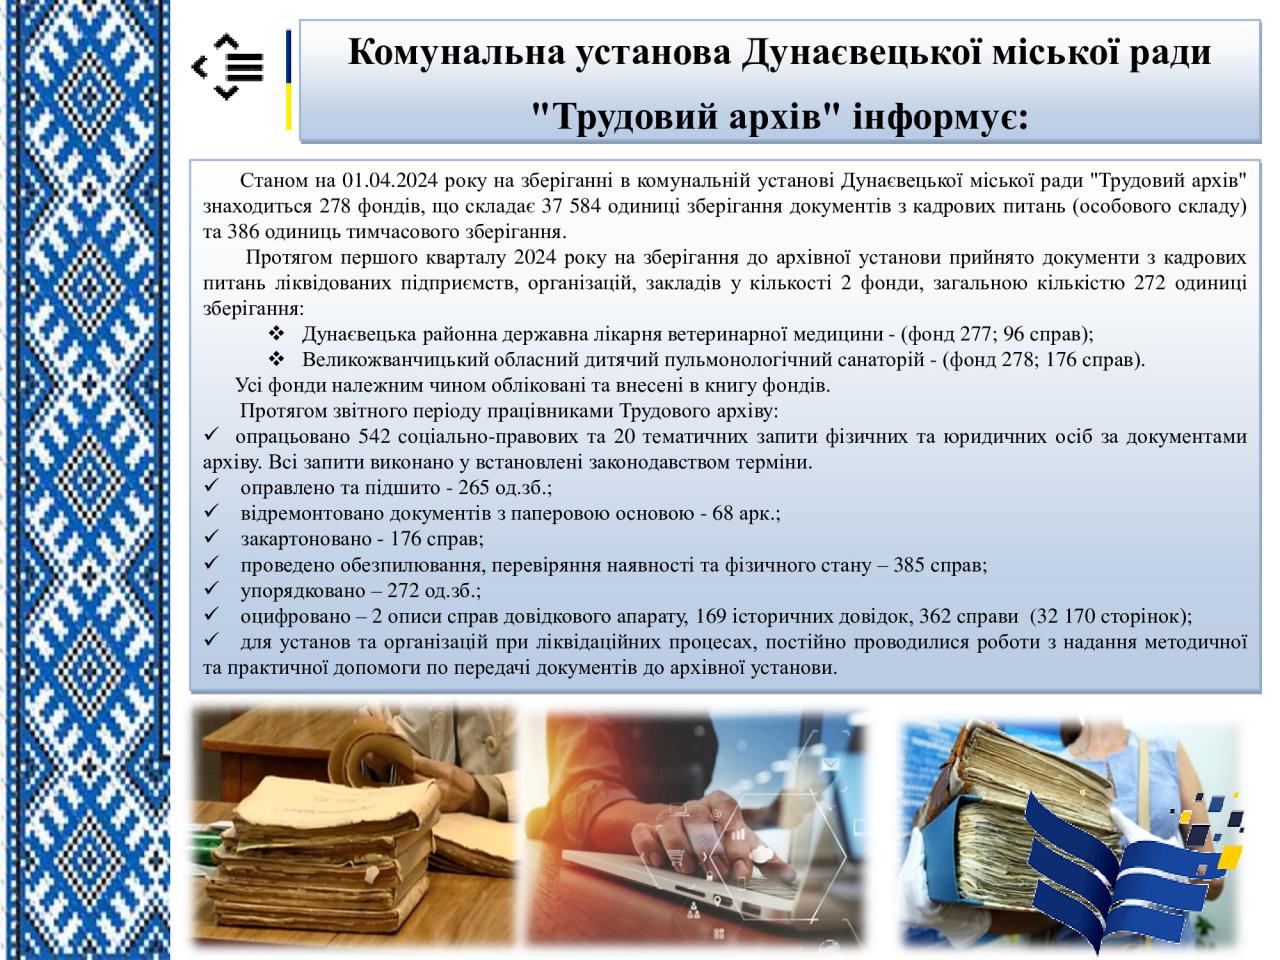 http://dunrada.gov.ua/uploadfile/archive_news/2024/04/03/2024-04-03_5412/images/images-82493.jpg